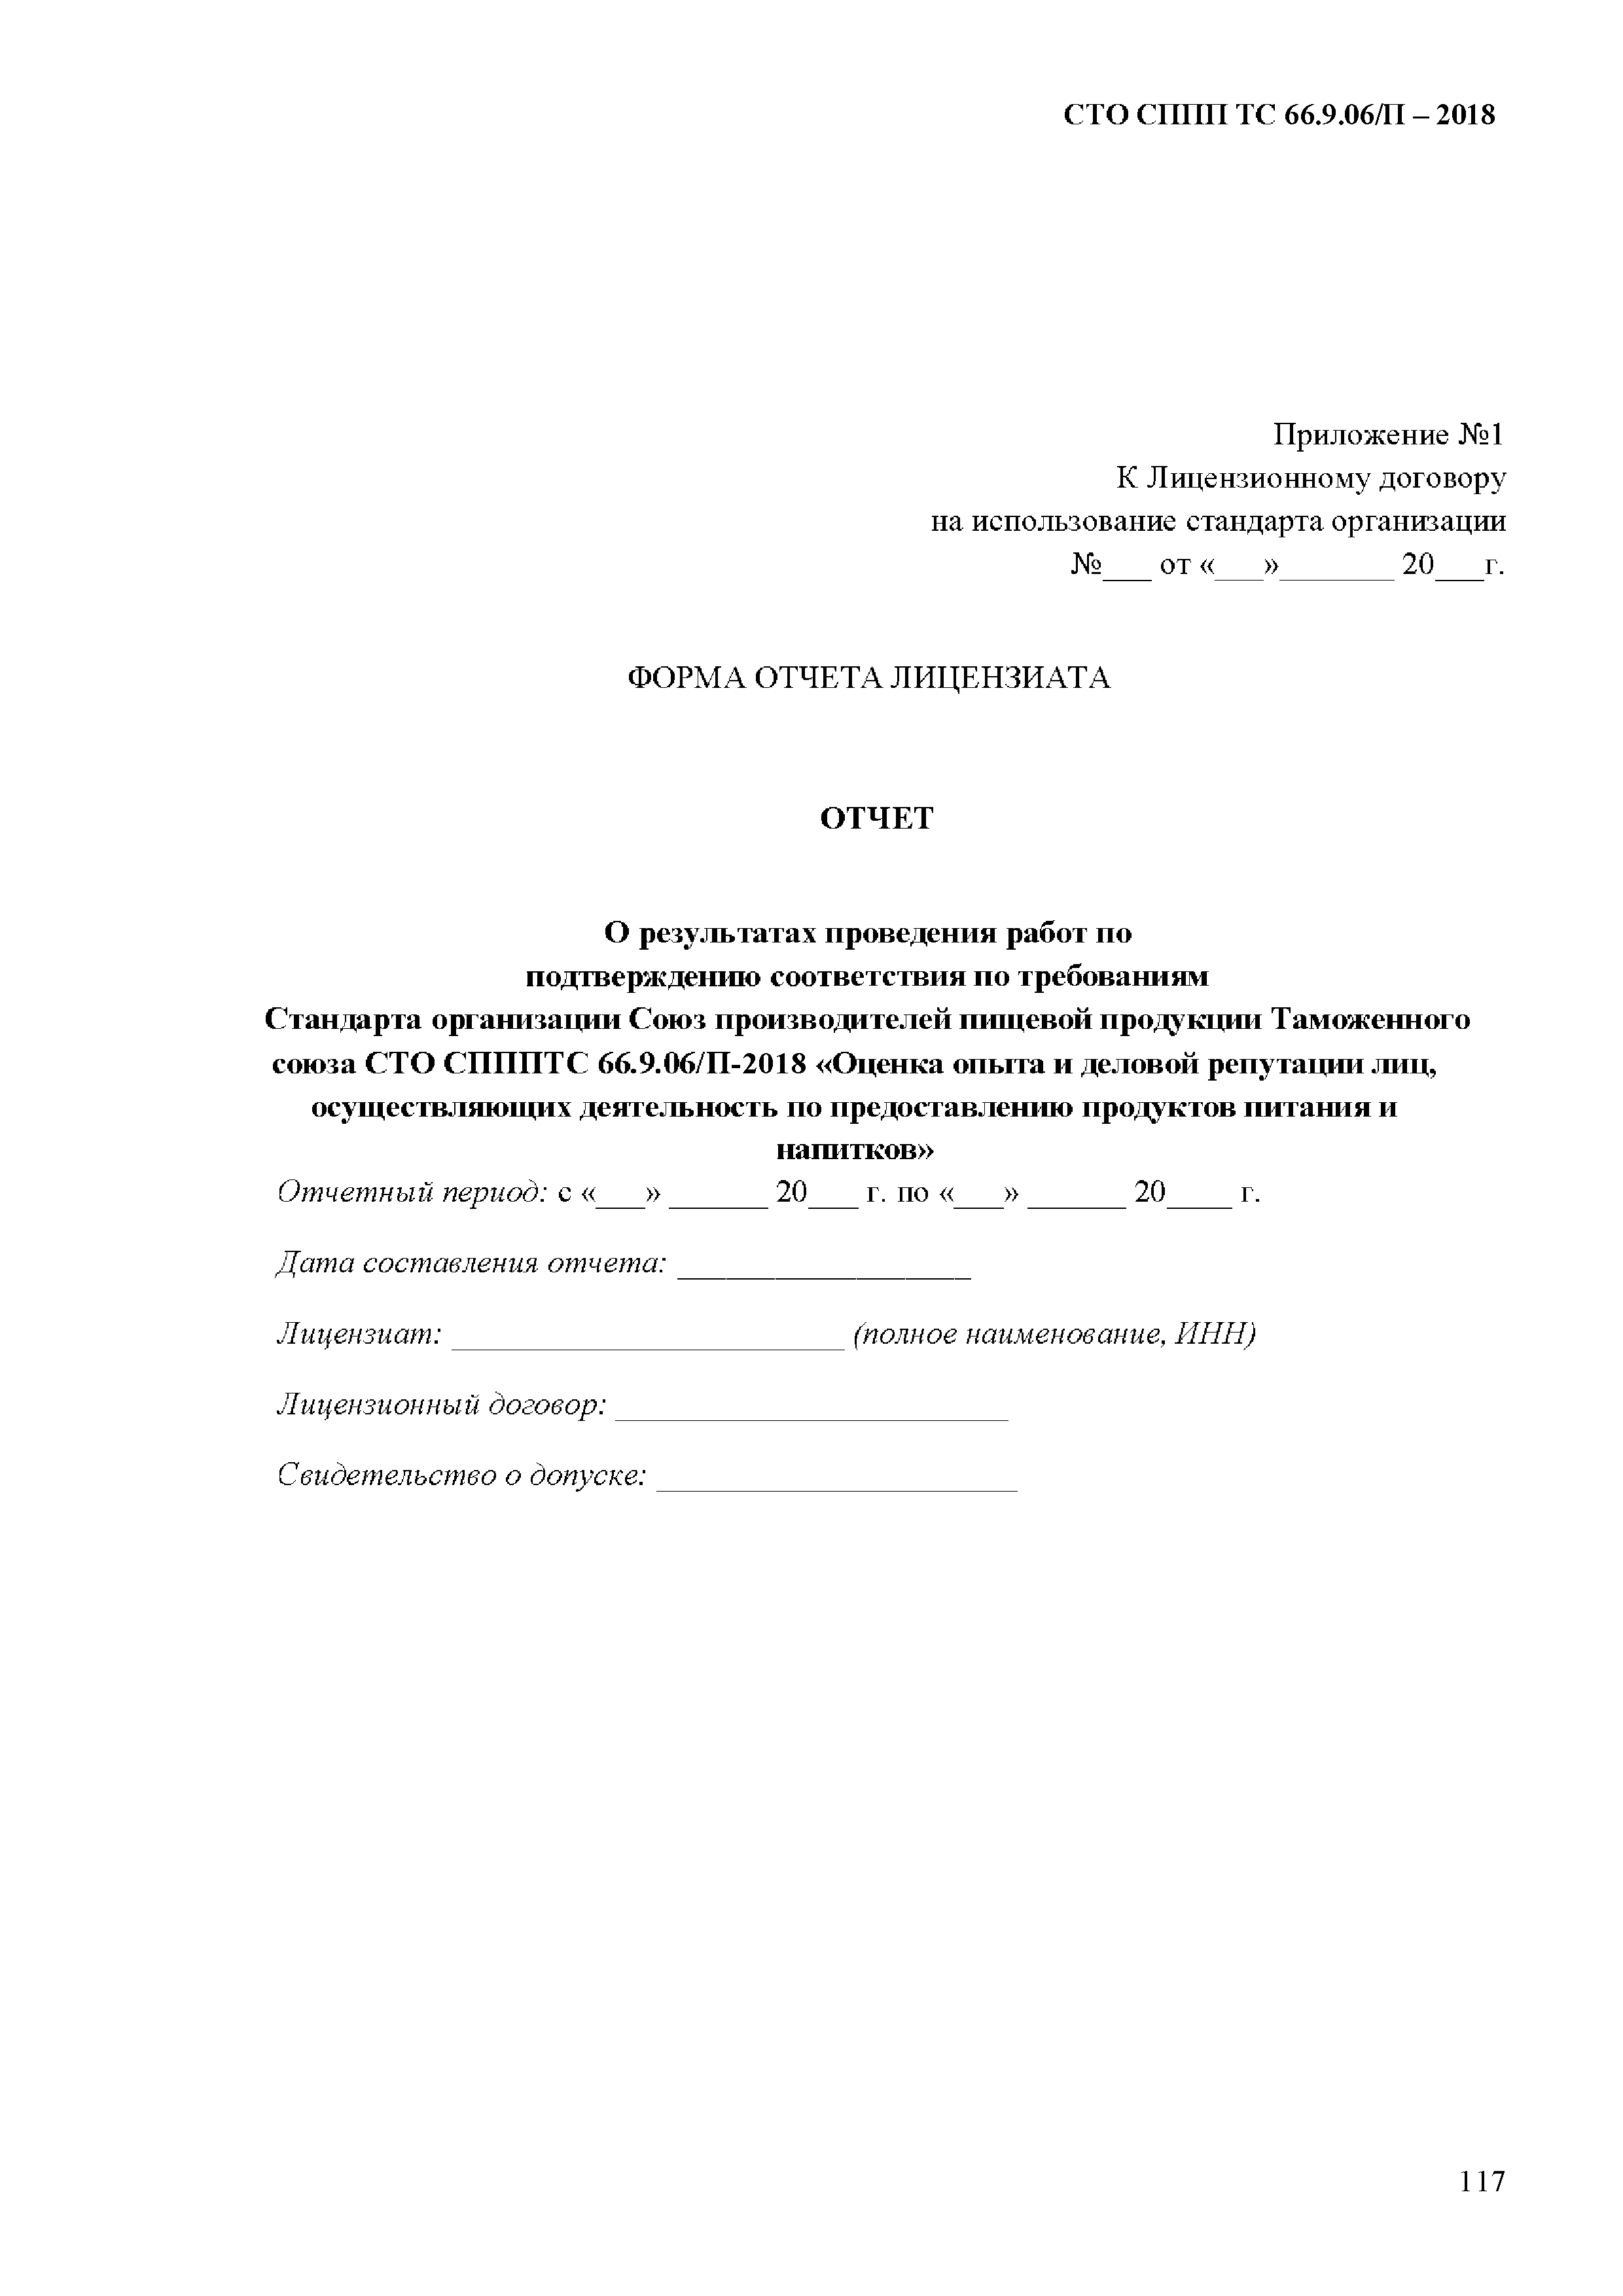 СТО СППП ТС 66.9.06/П-2018